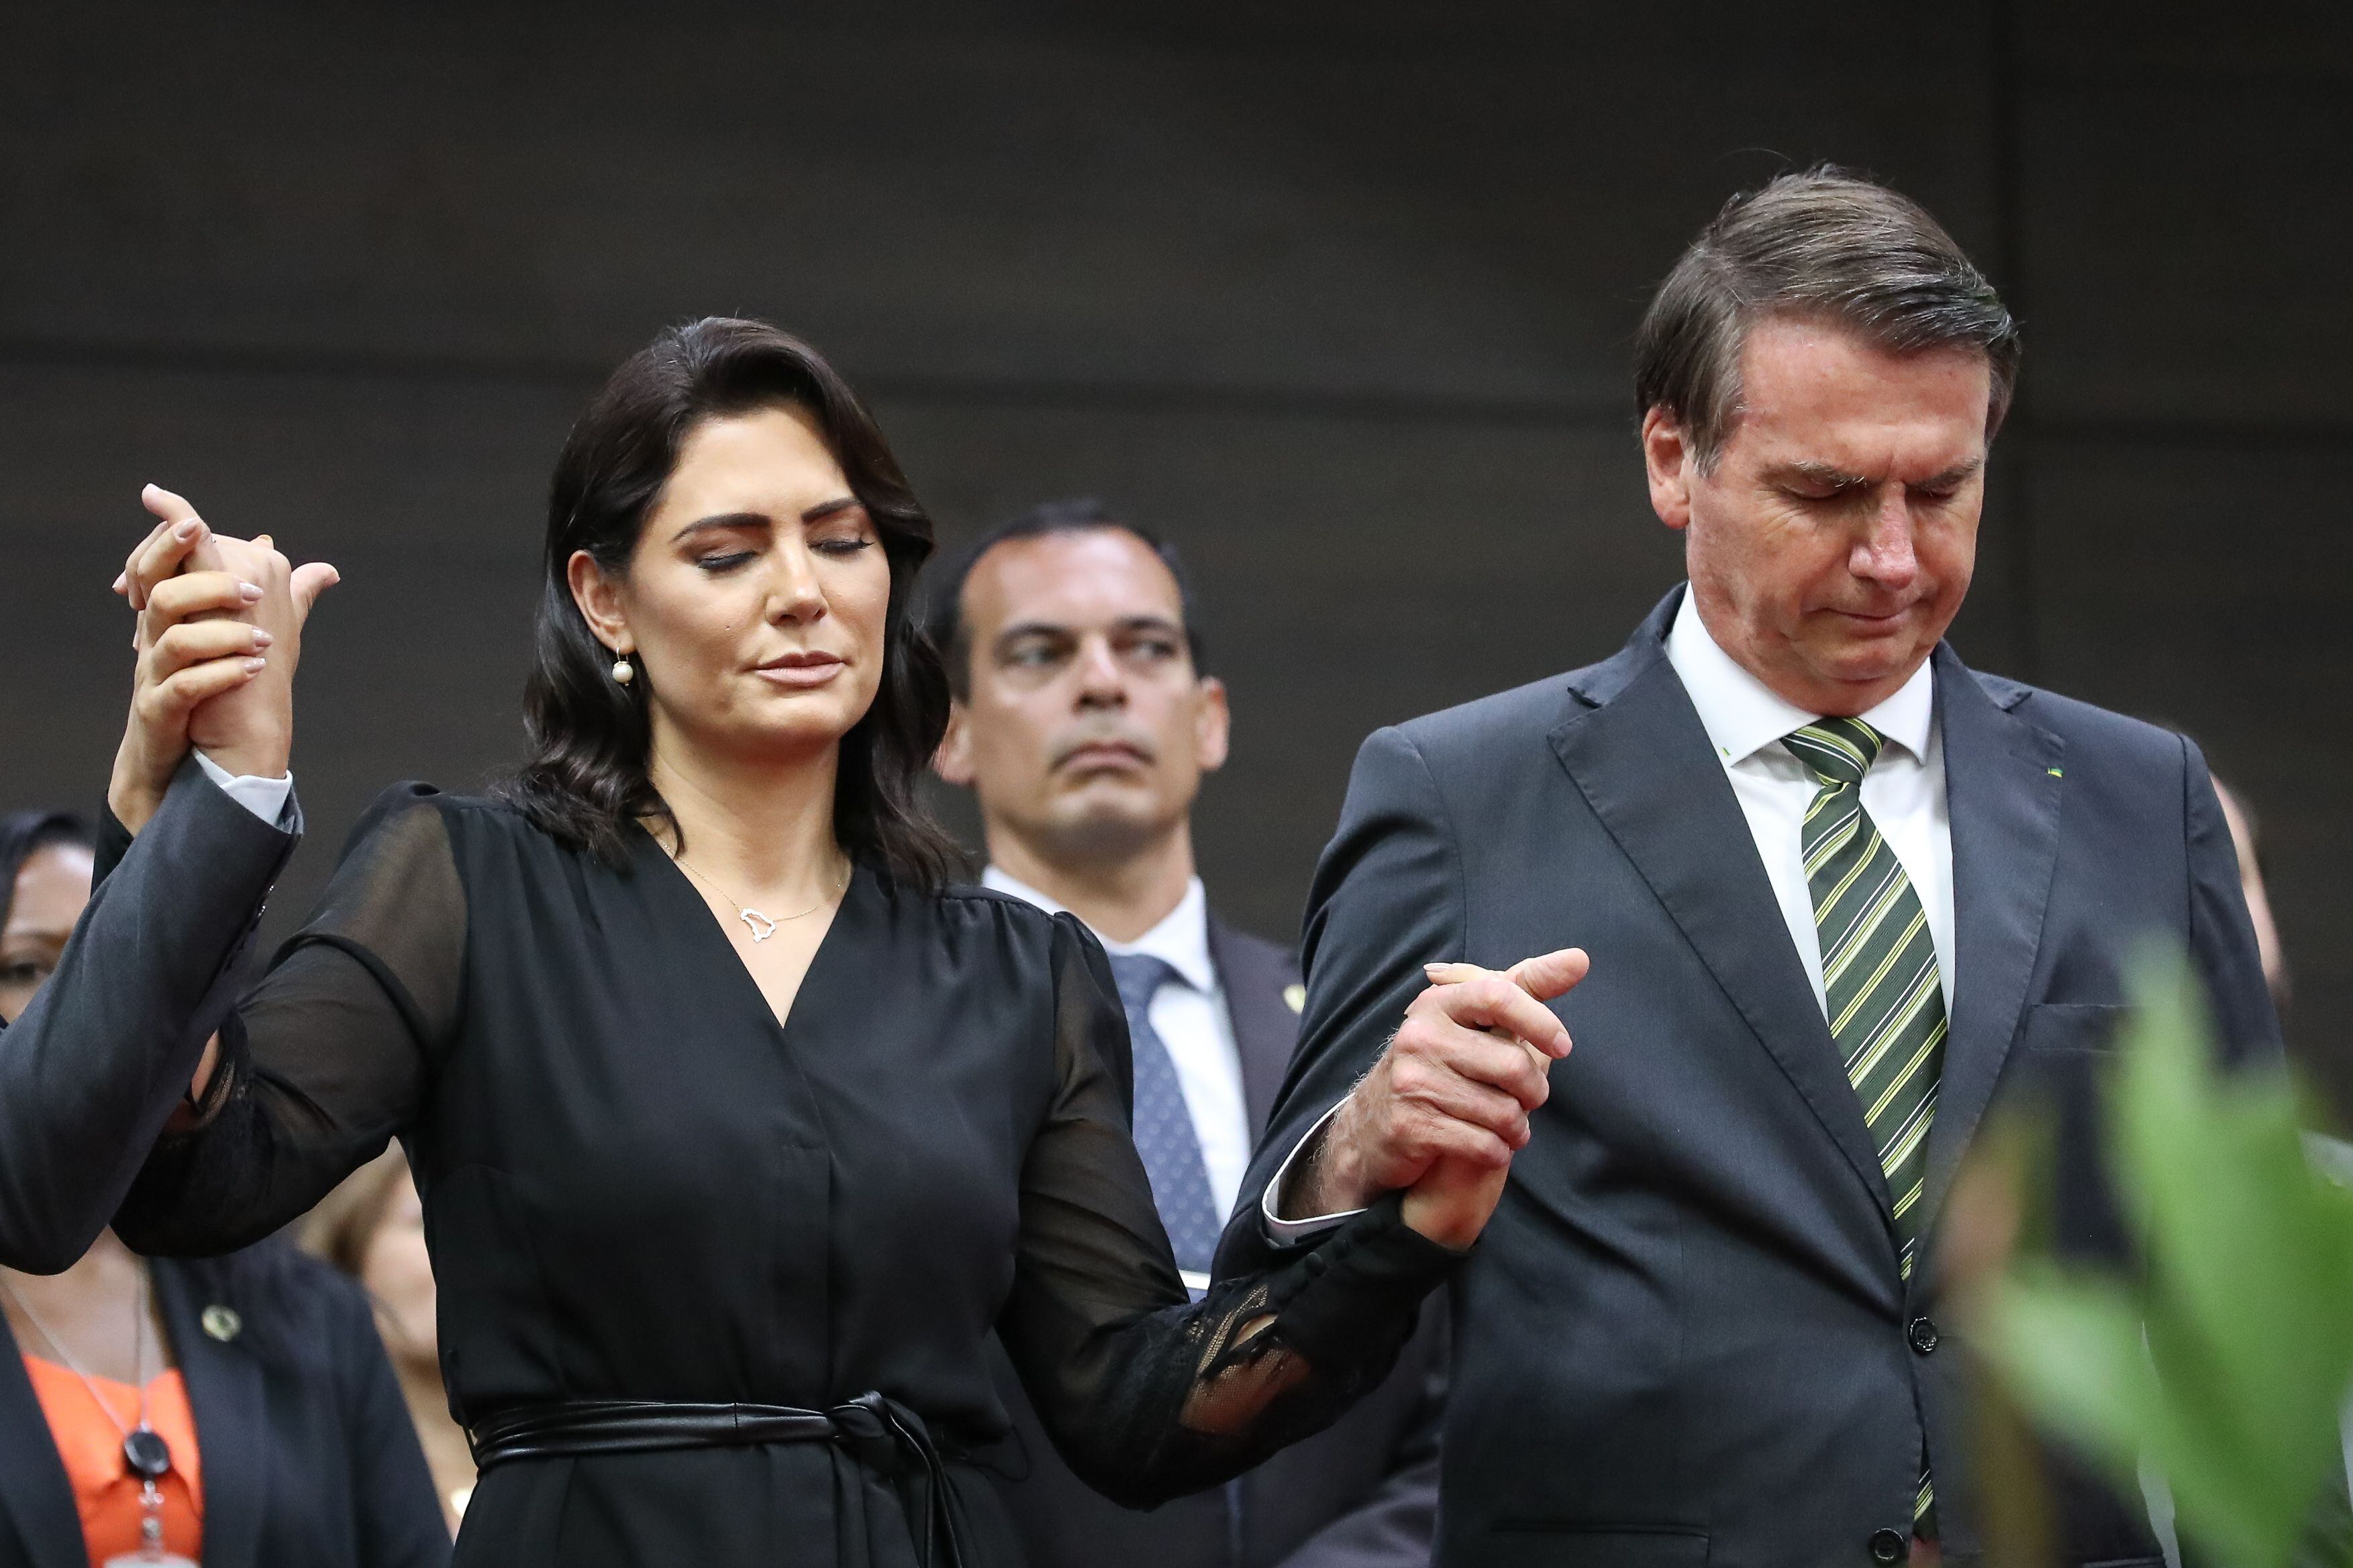 Apoiadores veem traição do presidente Jair Bolsonaro e aliados